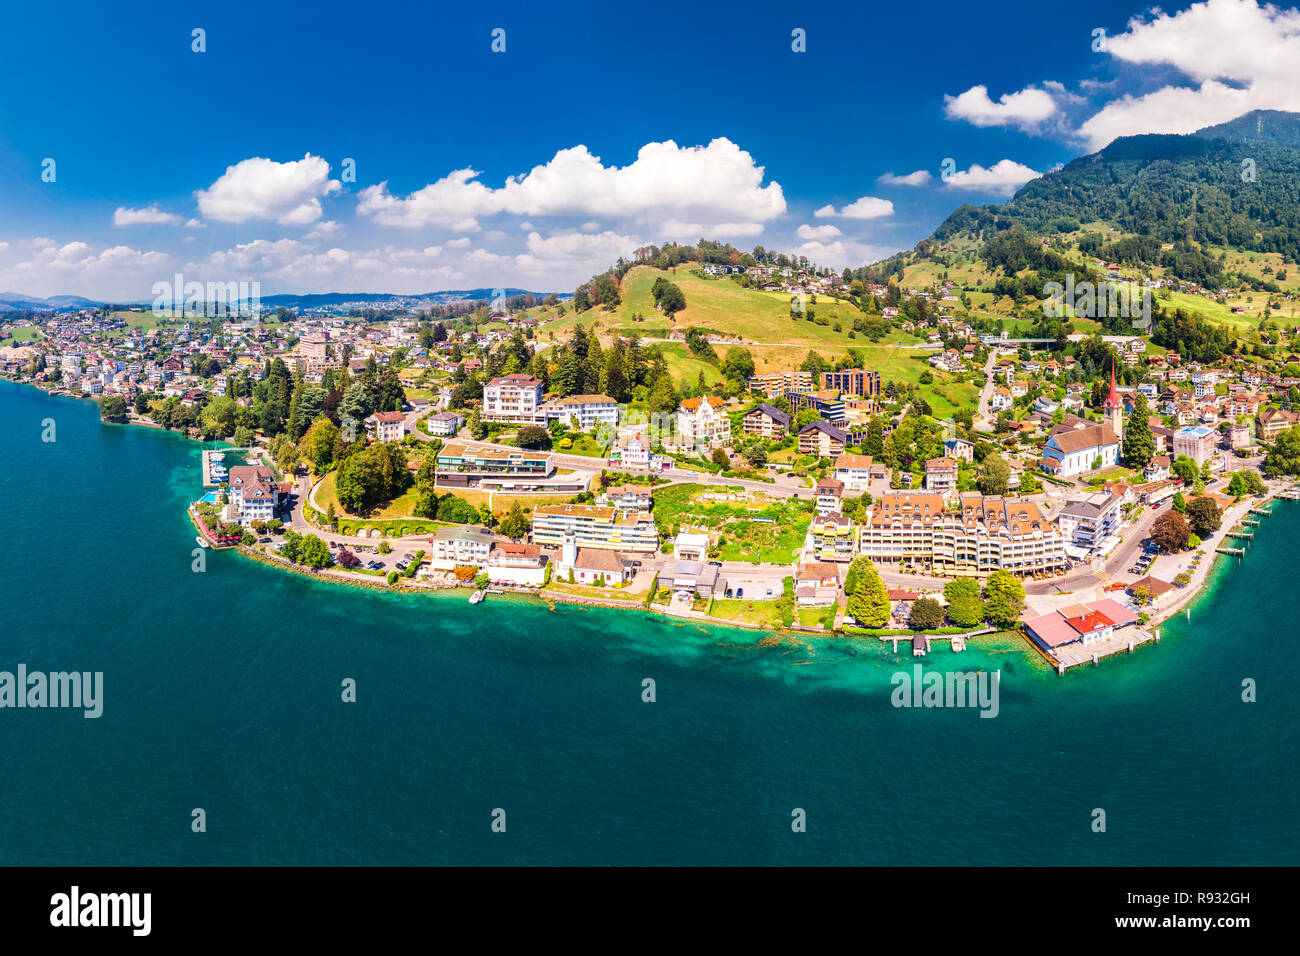 Villaggio Weggis, il lago di Lucerna (Vierwaldstatersee), Rigi e alpi svizzere in background vicino la famosa città di Lucerna, Svizzera. Foto Stock